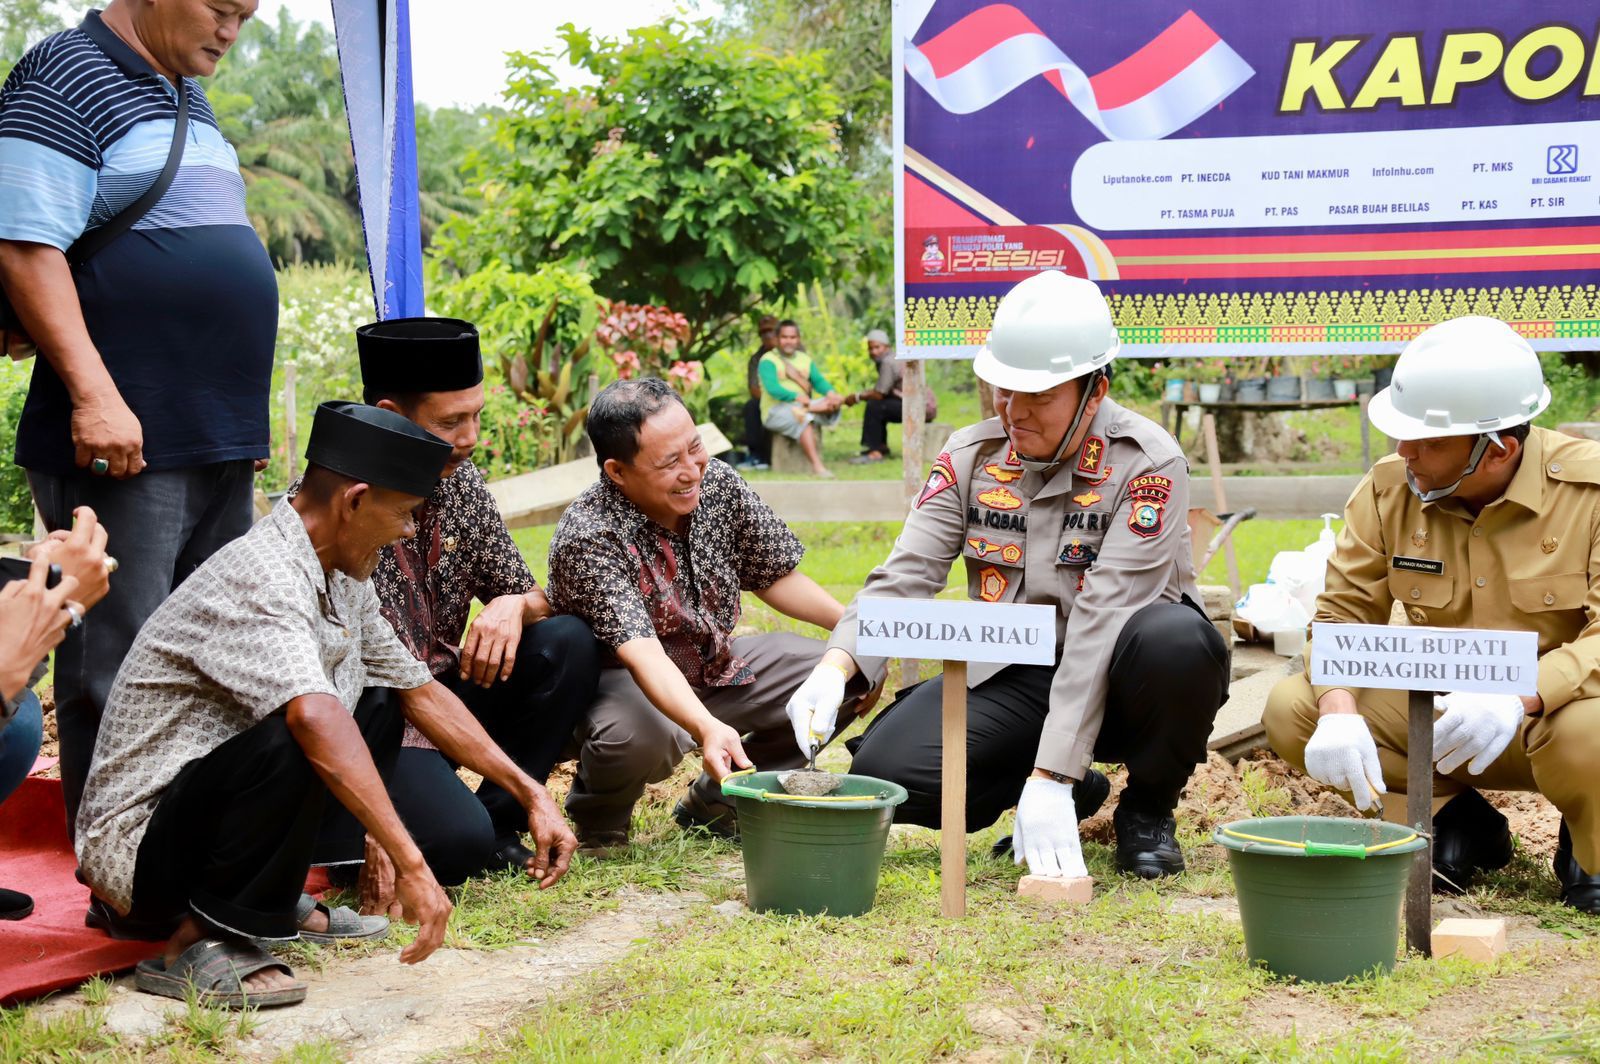 Kapolda Riau Lakukan Peletakan Batu Pertama Pembangunan Bedah Rumah Presisi